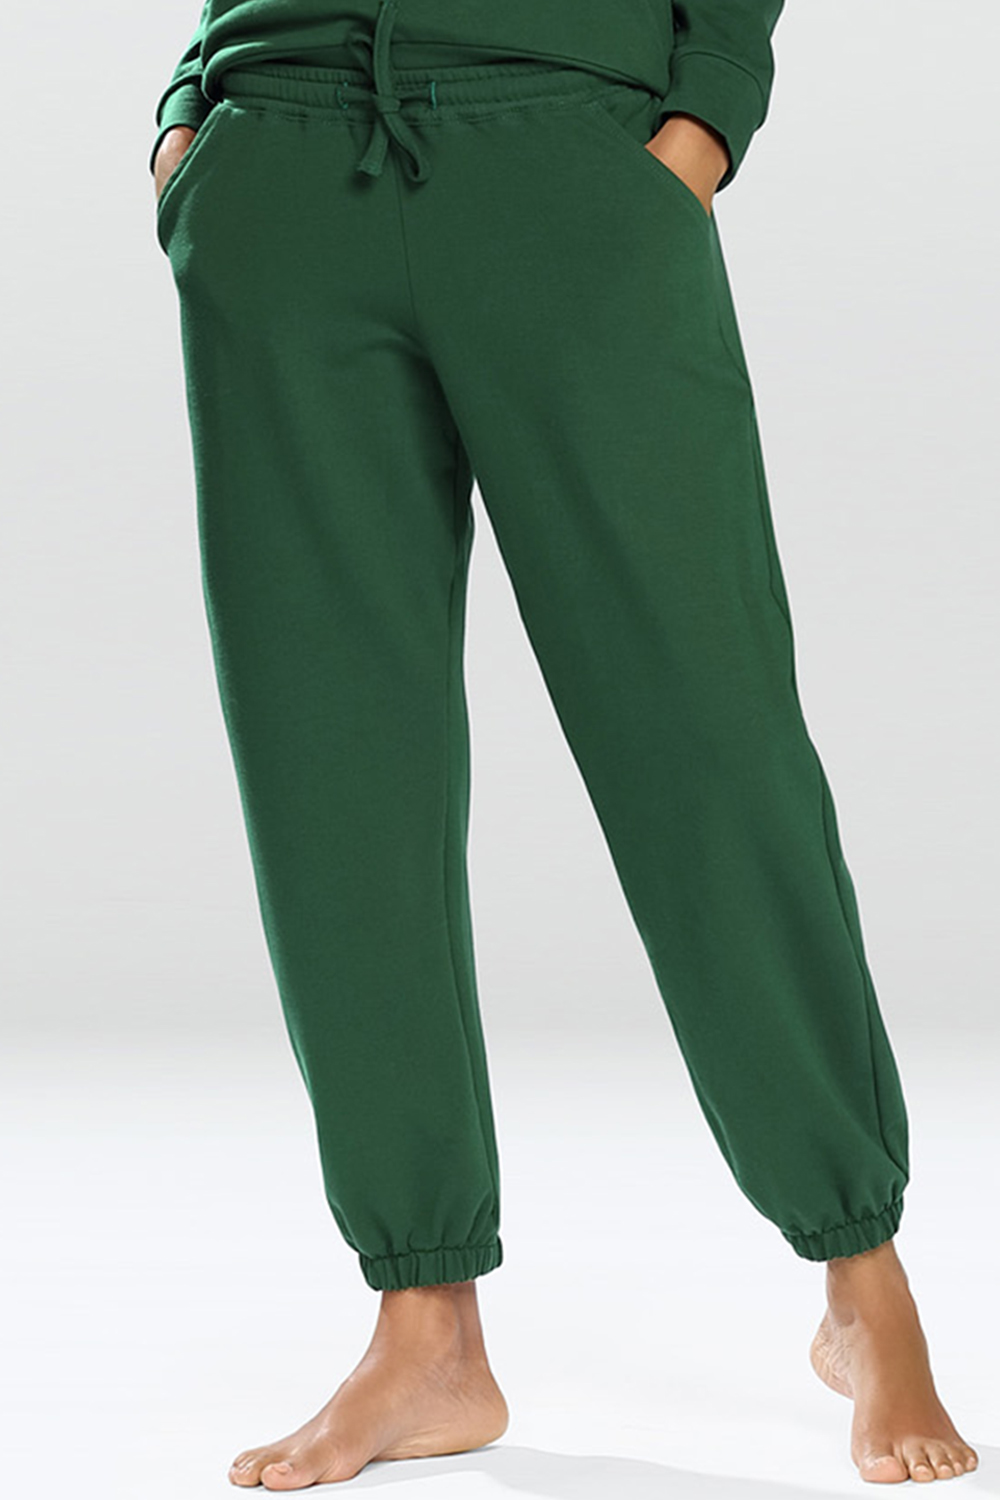 Dkaren Wenezja Spodnie dres, zielony